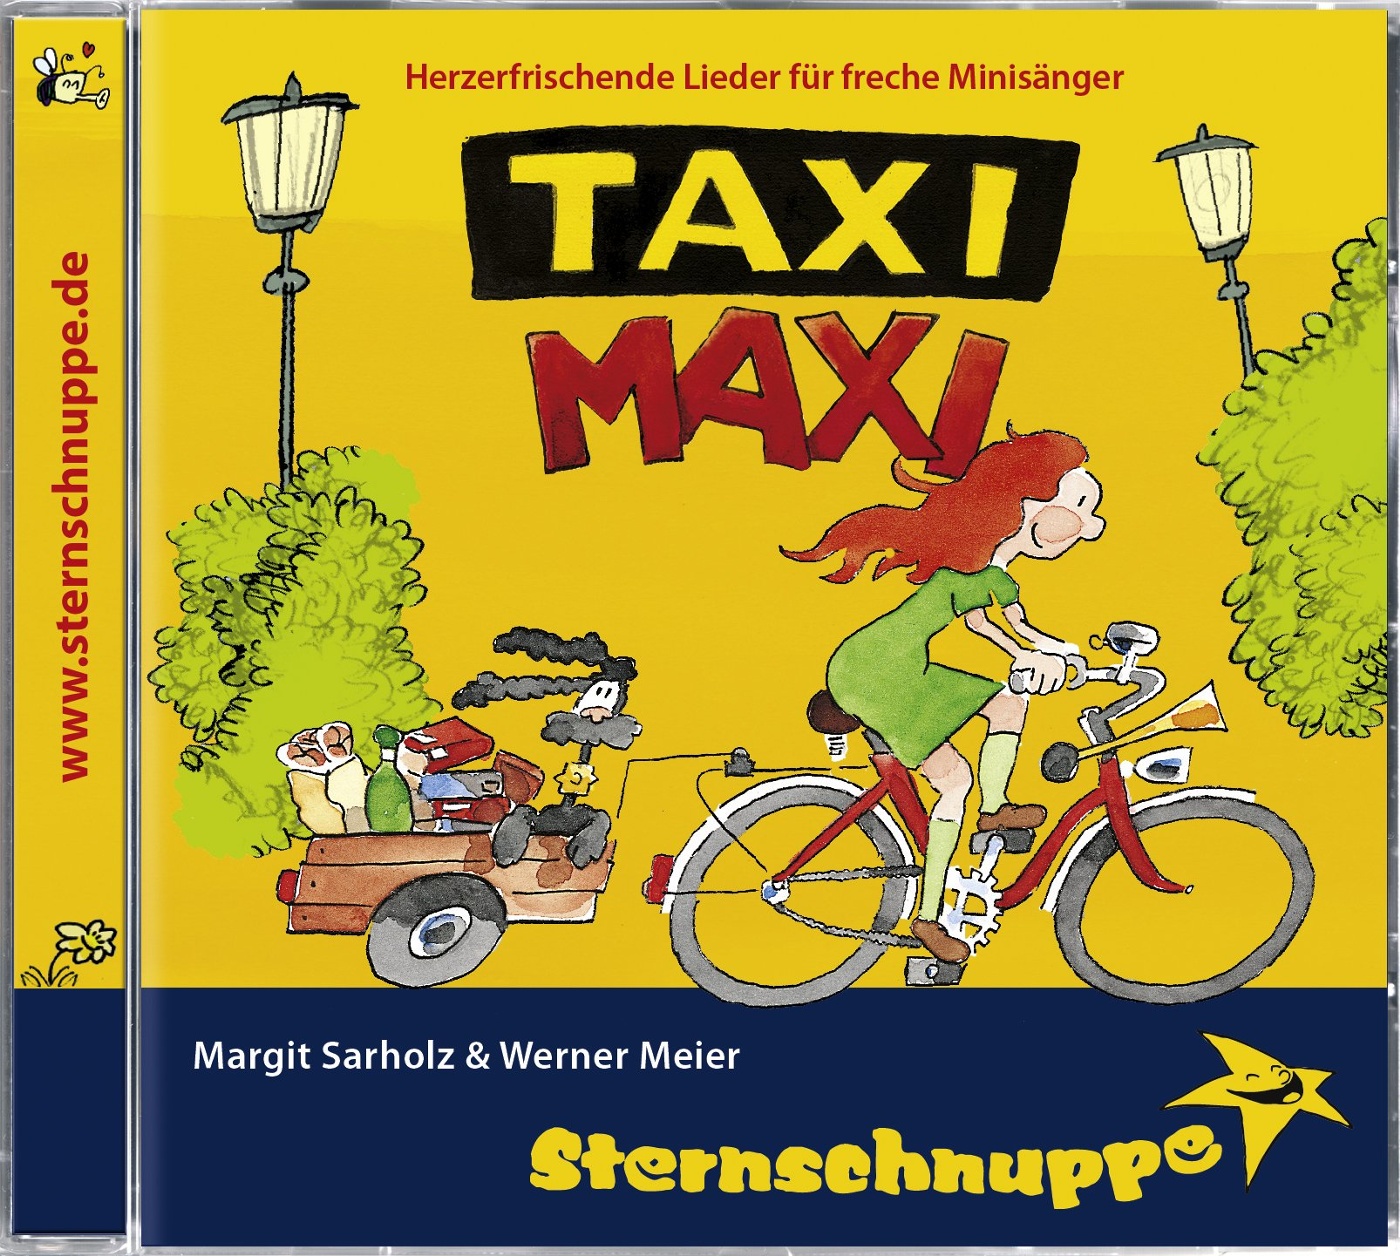 Maxi cd. Приглашение Hannibal Sternschnuppe 1987 г.купить.